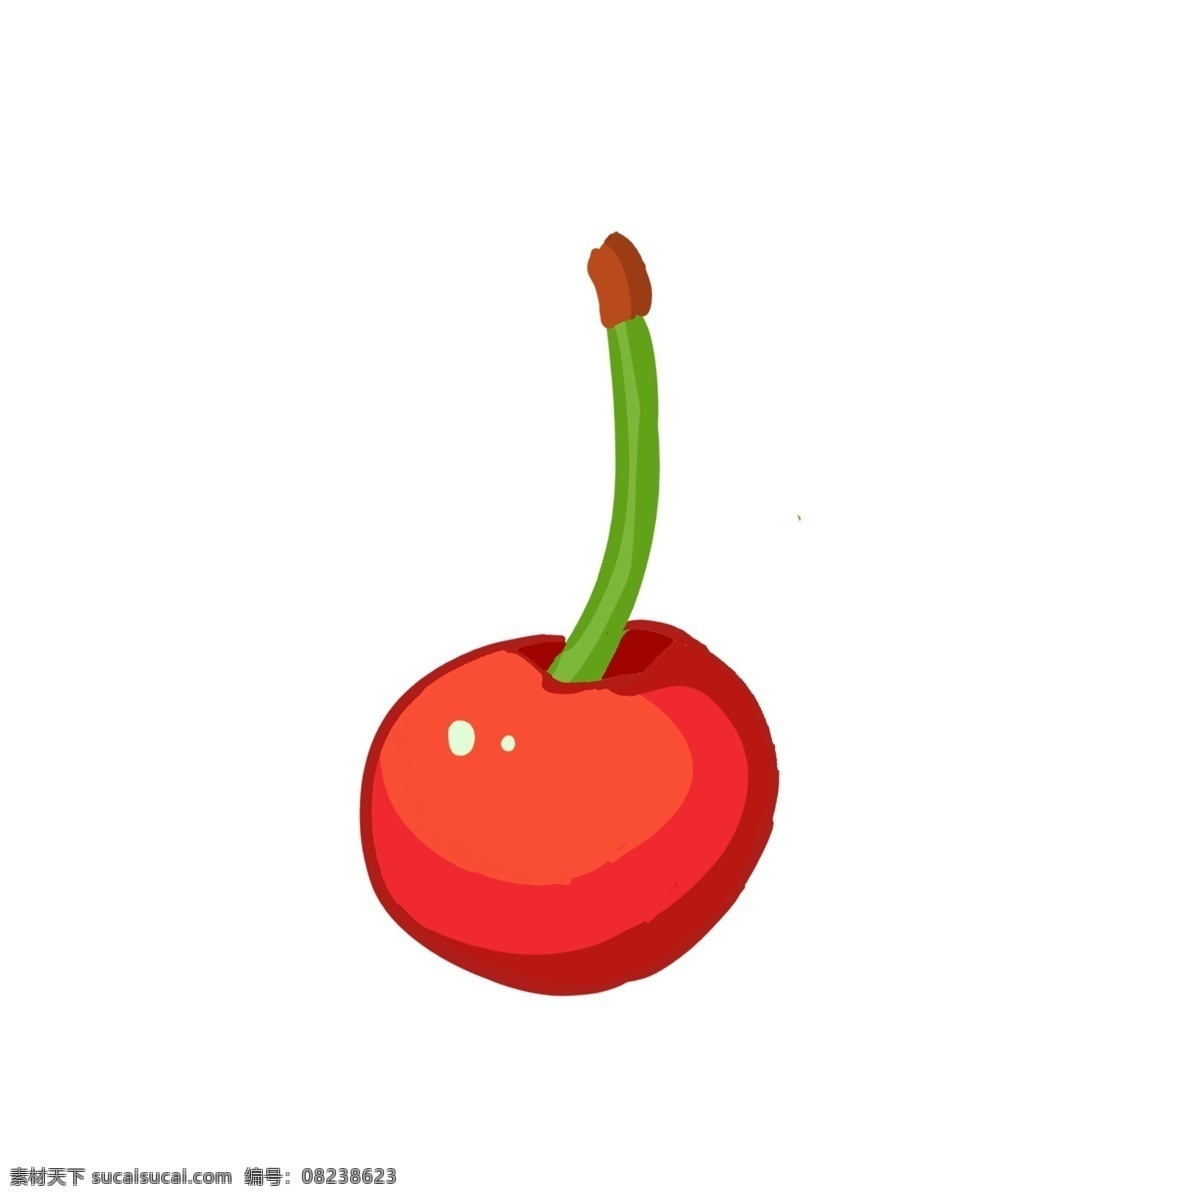 成熟 红色 大 樱桃 枚 红果 绿叶 酸甜 可口 浆果 水分 开胃 果香 李属植物 水果 过节 果盘 食用